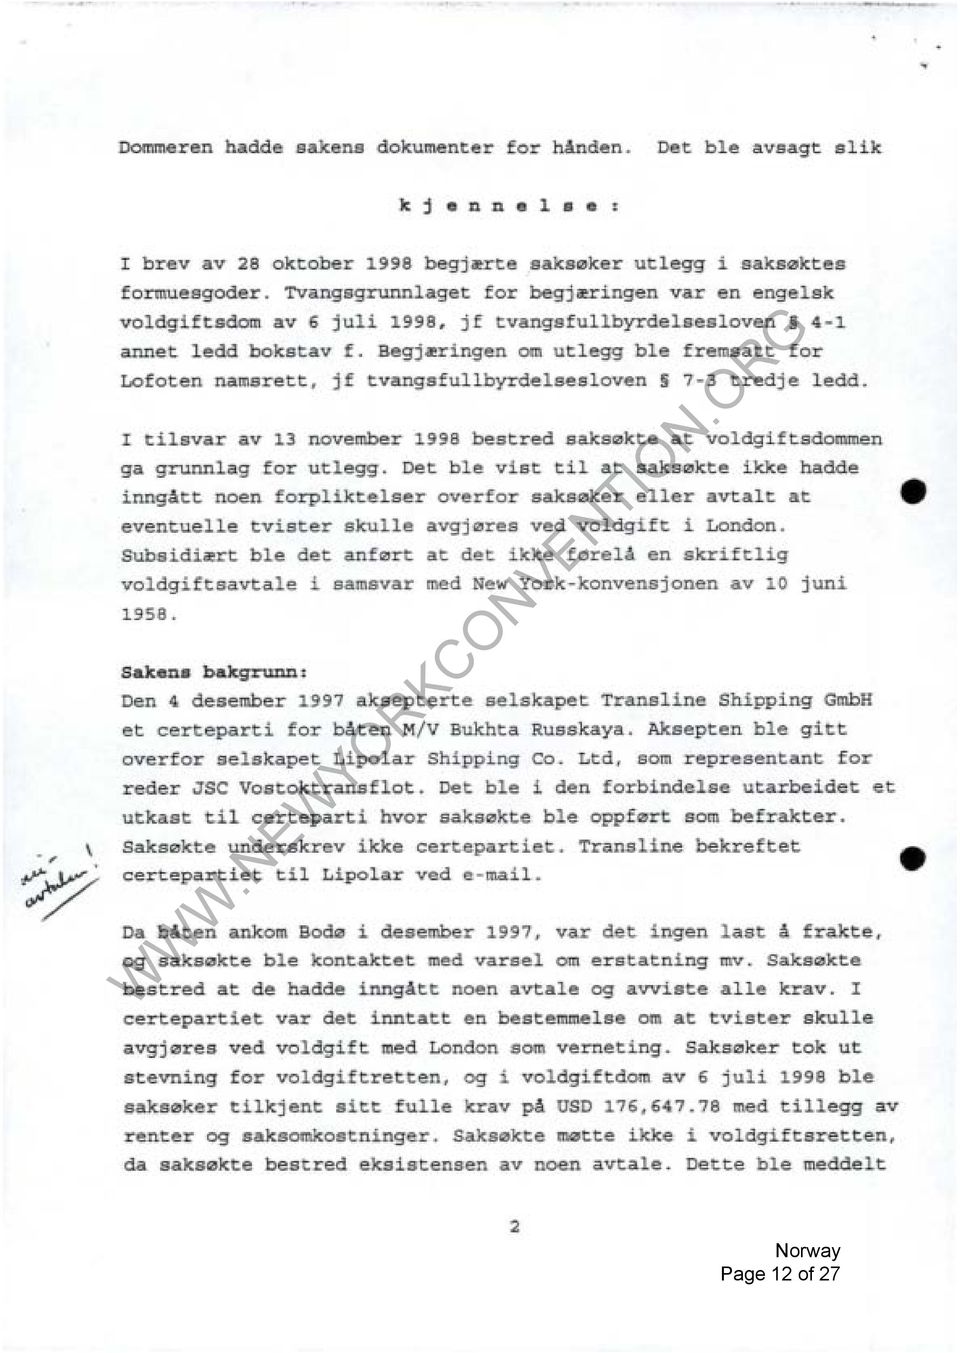 Begj~ringen Lofoten namsrett, jf tvangsfullbyrdelsesloven om utlegg ble fremsatt for 7-3 tredje ledd. I tilsvar av 13 november 1998 bestred saks0kte at voldgiftsdommen ga grunnlag for utlegg.